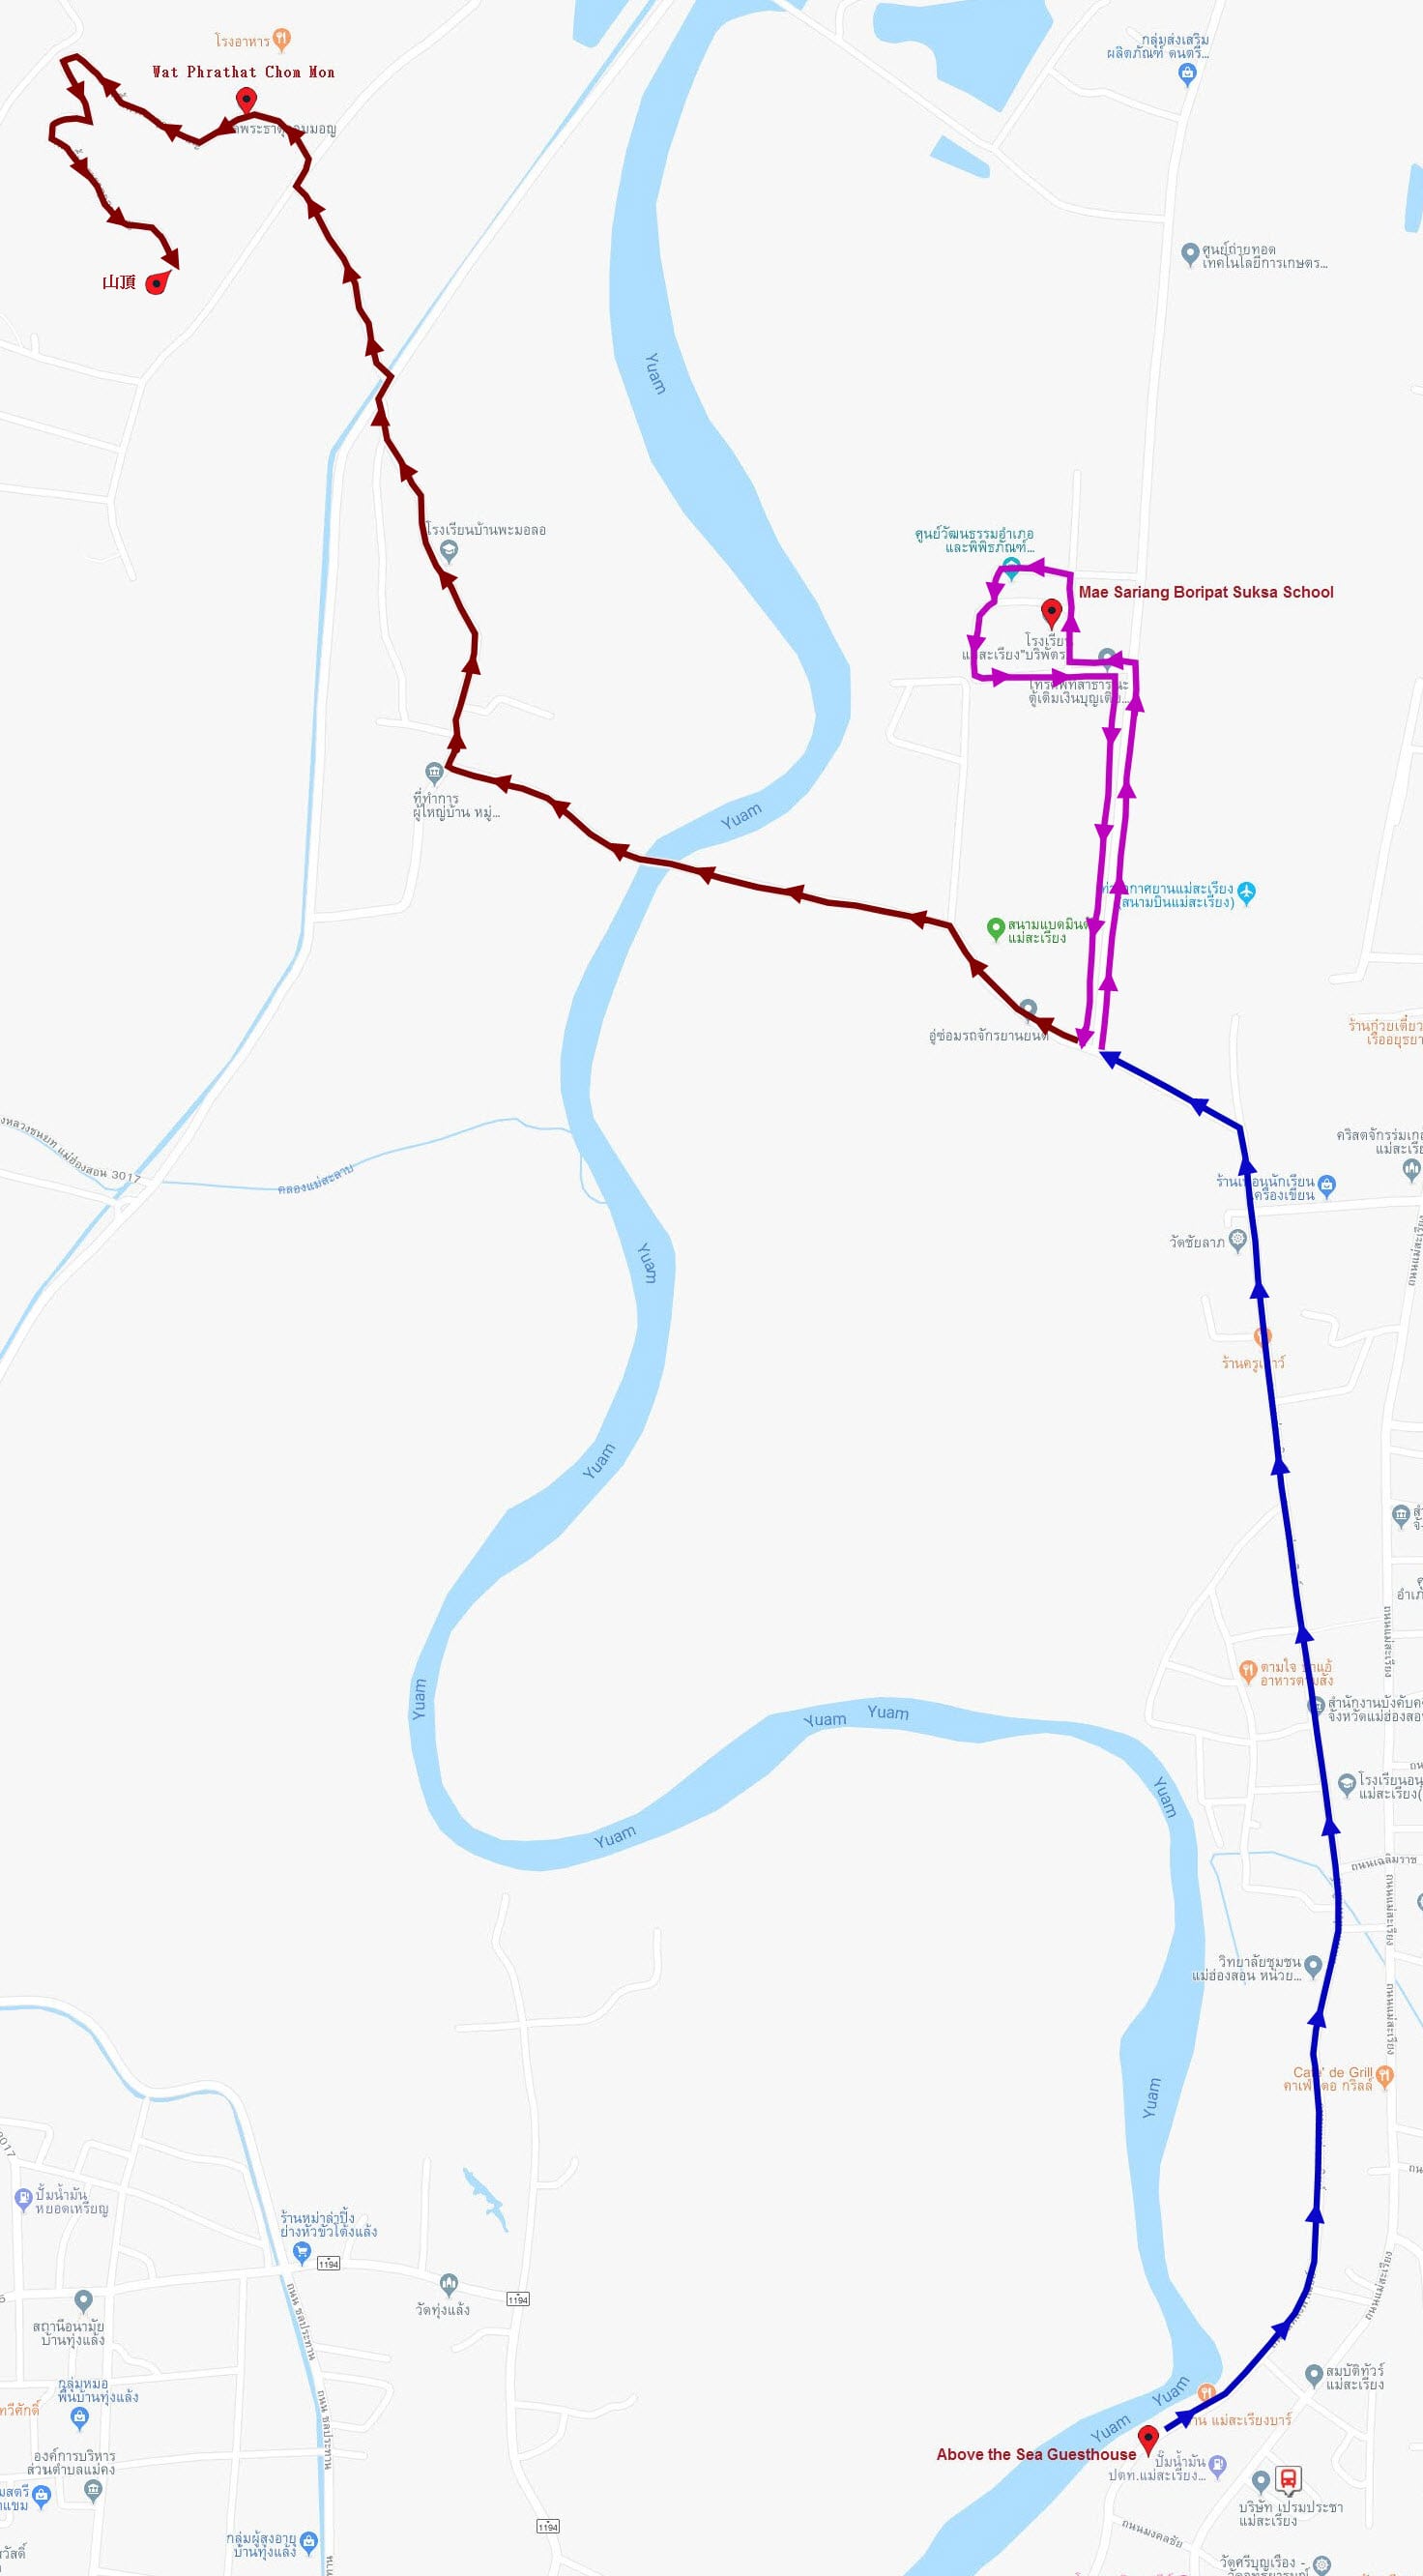 泰國夜沙良 (Mae Sariang / อำเภอแม่สะเรียง)鄉鎮中心步行到 Wat Phrathat Chom Mon 山頂的路線地圖